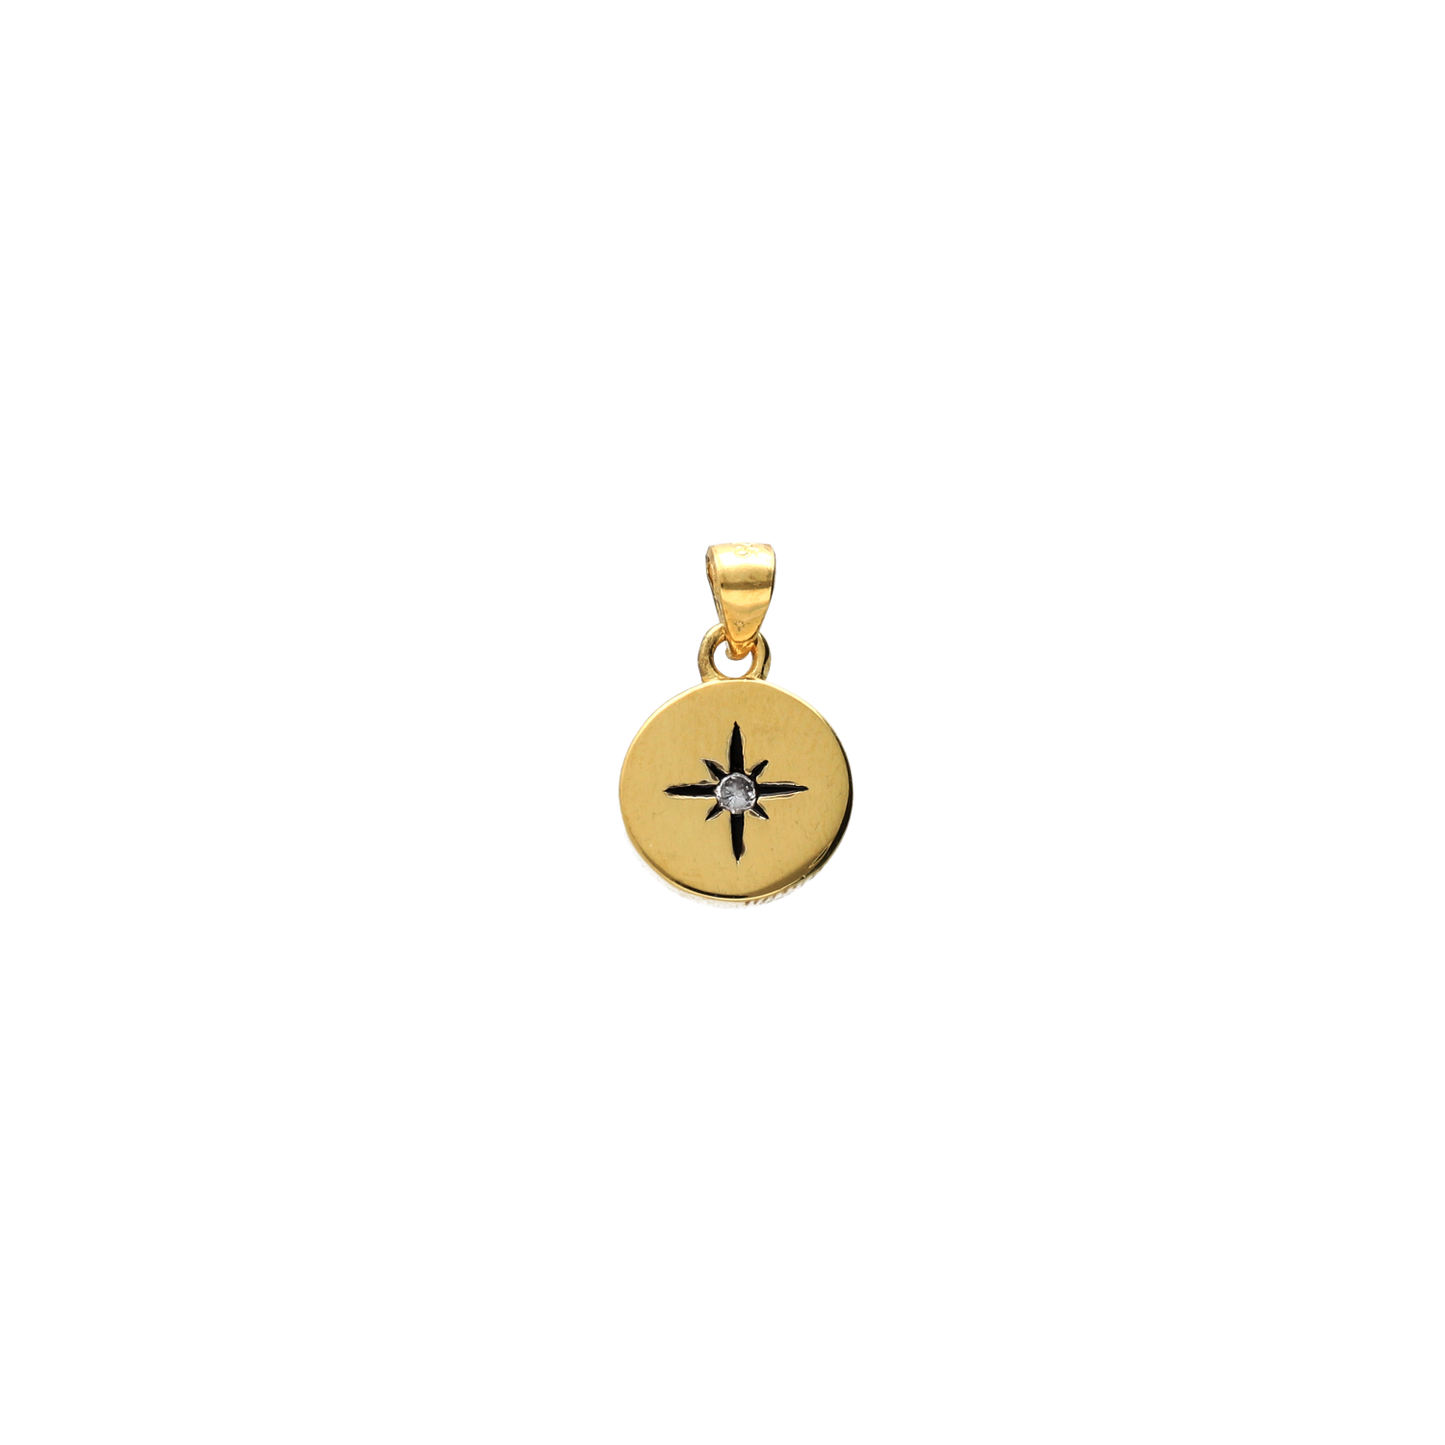 Nuestro Charm de plata Polaris simboliza esta estrella guía. Este charm de plata está bañado en oro de alta calidad  con toda la garantía de calidad de Bendita Eva y tiene una circonita blanca en el centro.